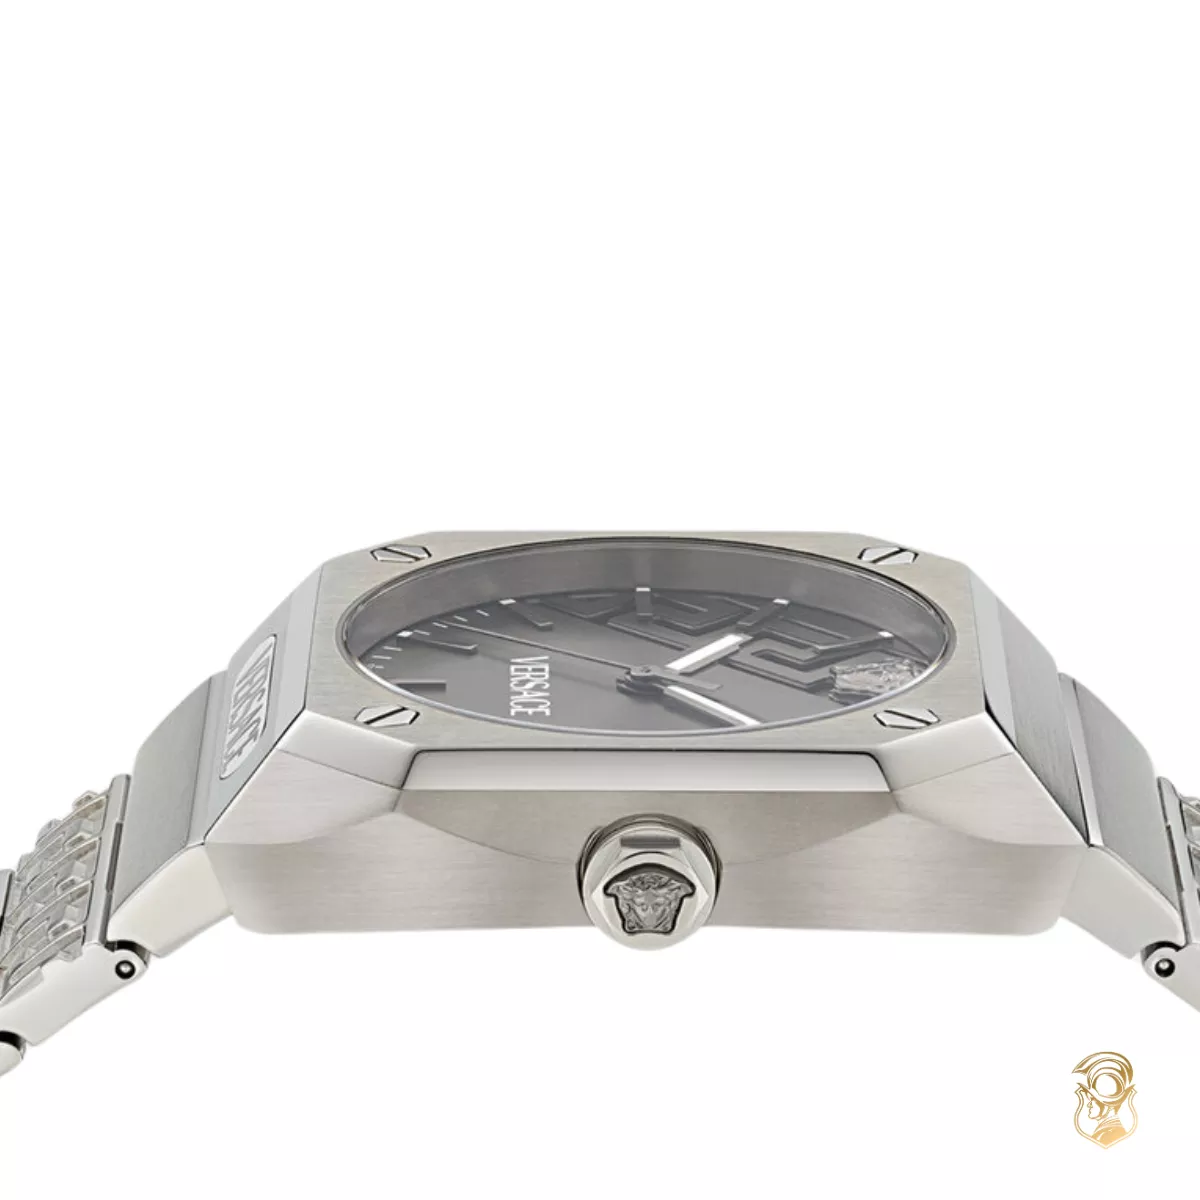 Versace Antares Watch 41.5 X 44MM